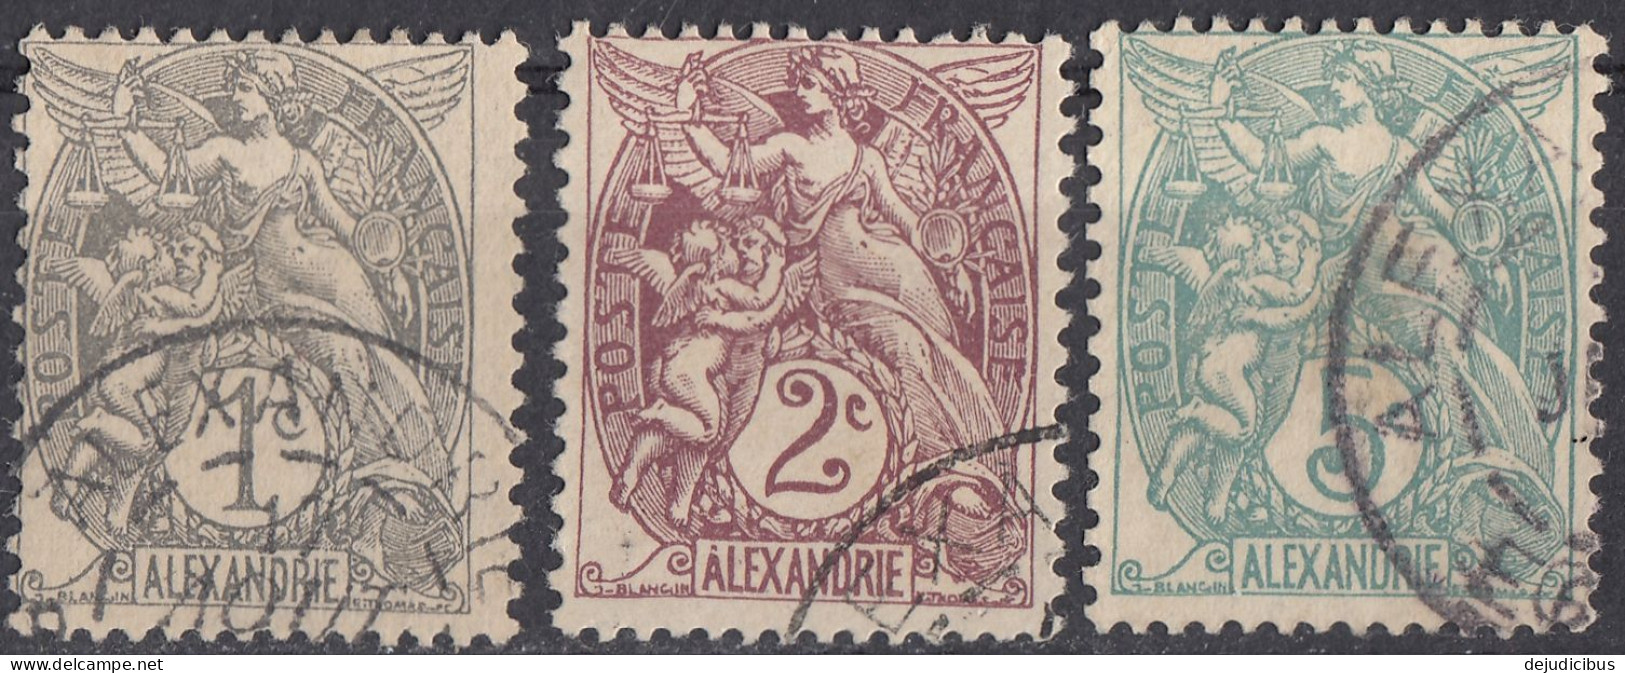 ALEXANDRIE, COLONIA FRANCESE - 1902/1903 - Lotto Costituito Da 3 Valori Obliterati: Yvert 19, 20 E 23 - Usati